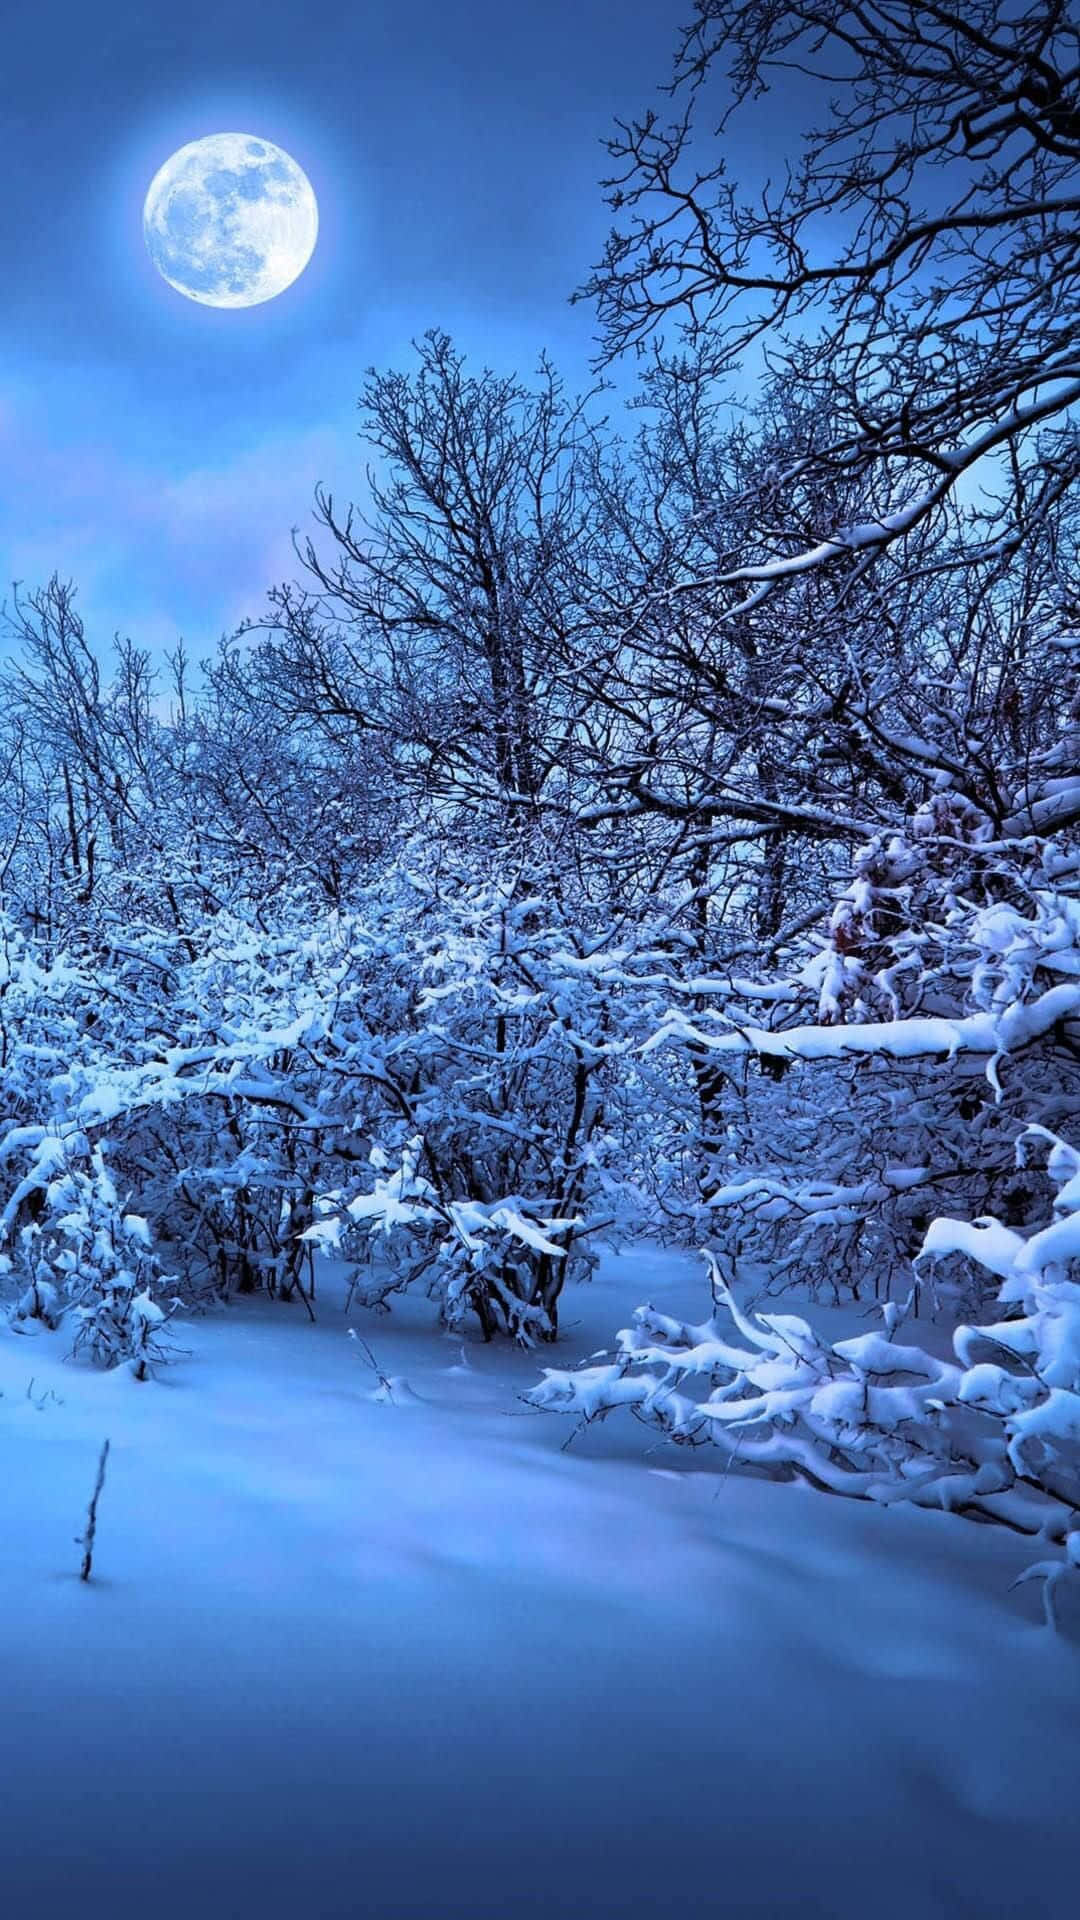 Nuovaarte Digitale Del Chiaro Di Luna D'inverno In New Hampshire Sfondo